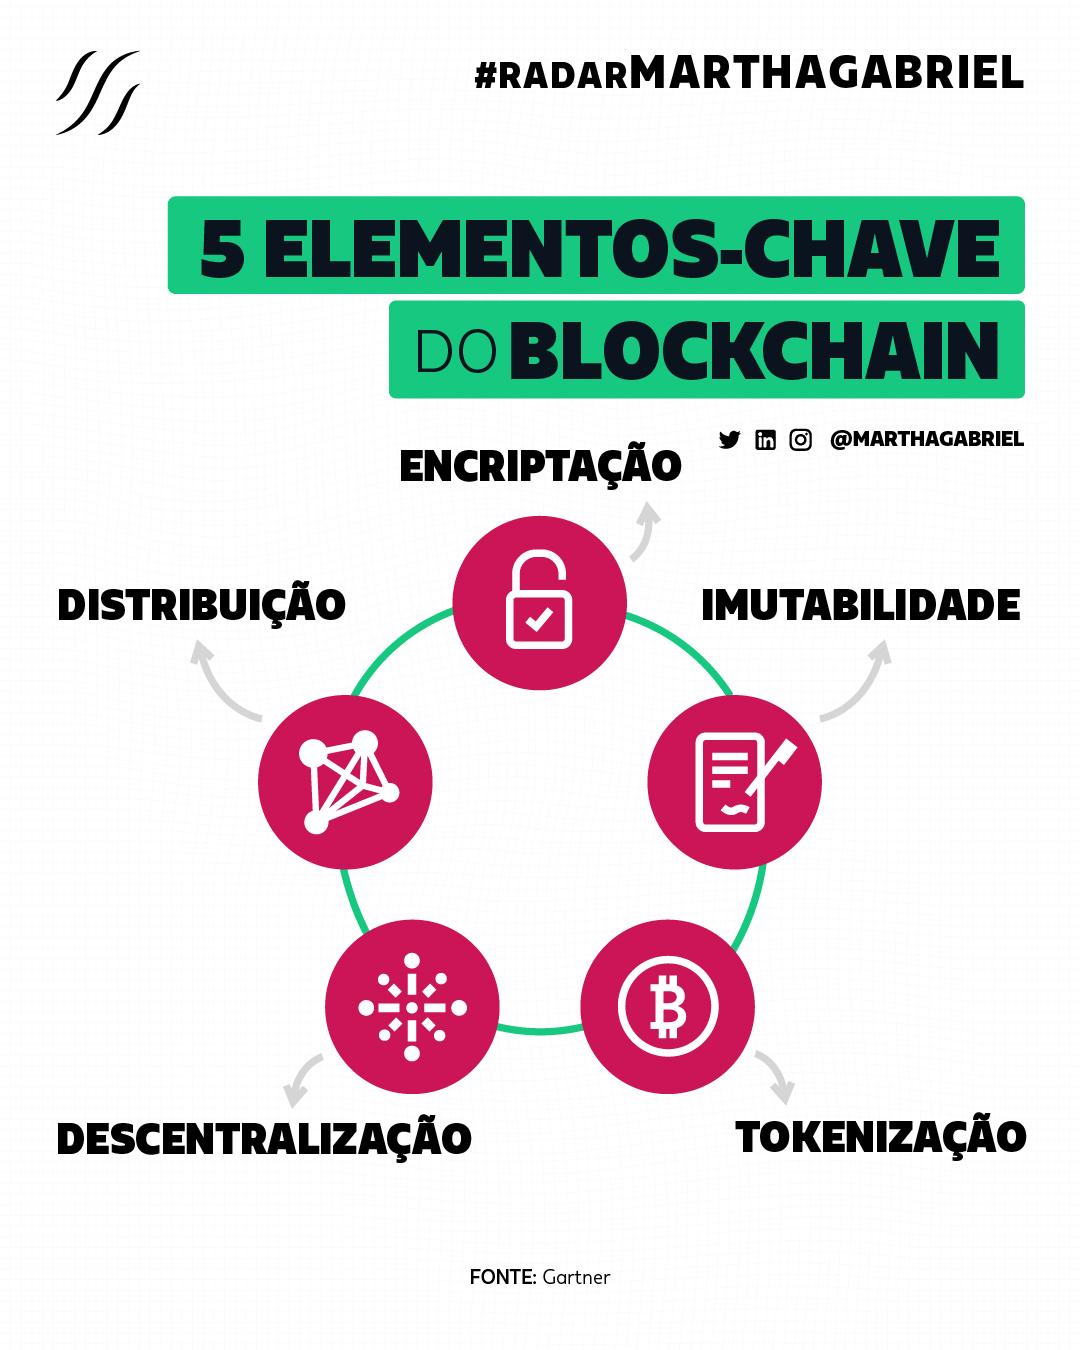 5 Elementos-chave do Blockchain